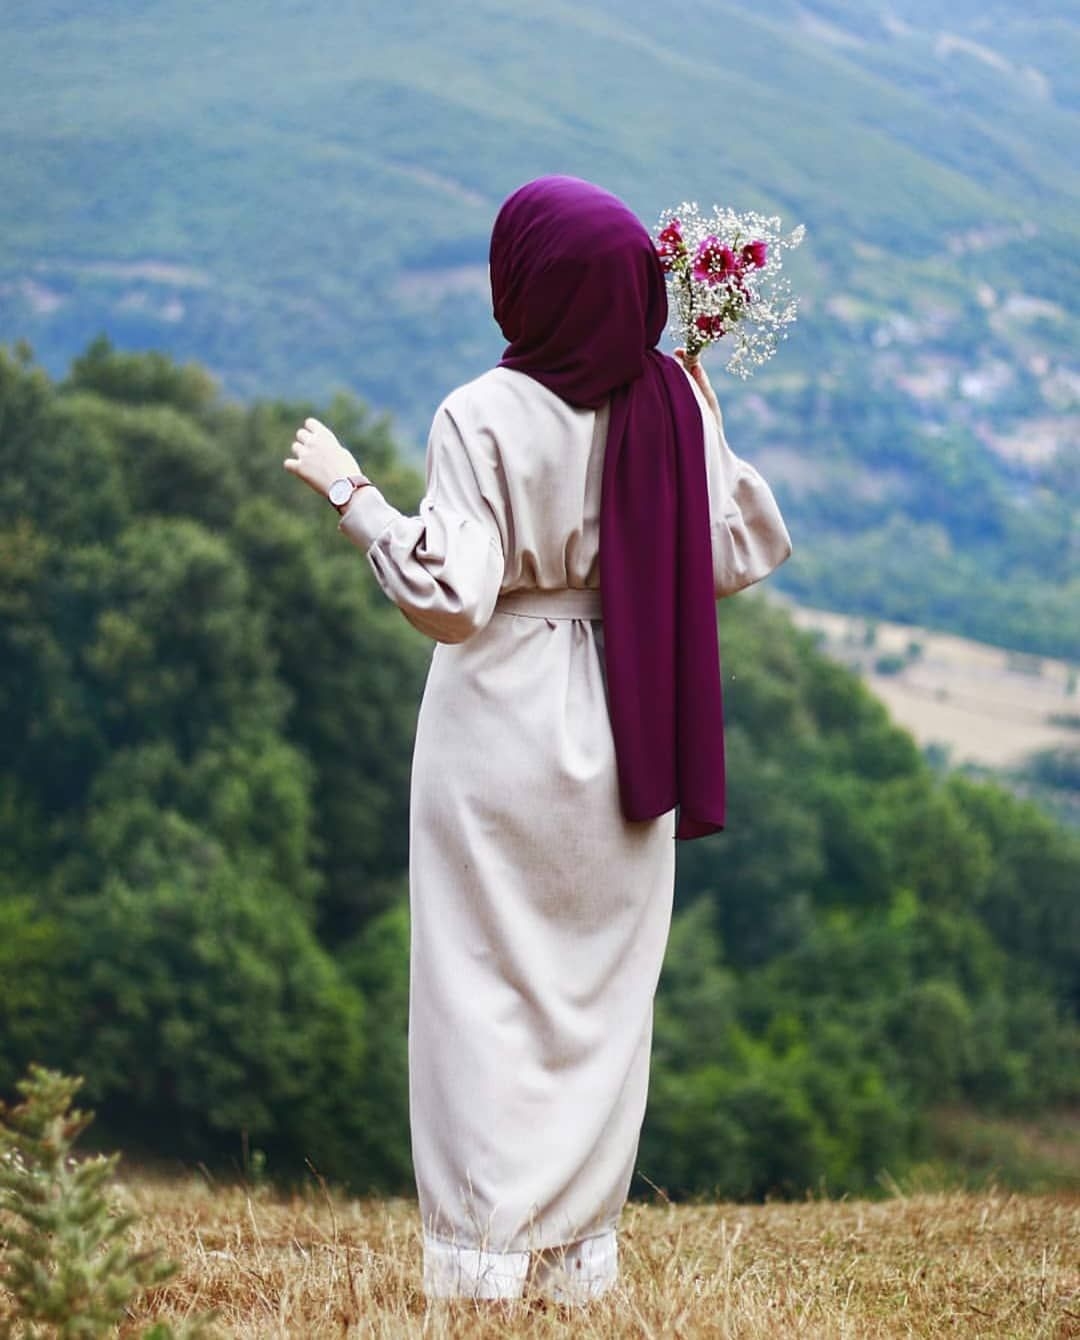 Картинки мусульманка с цветами (59 фото) » Картинки и статусы про окружающий мир вокруг